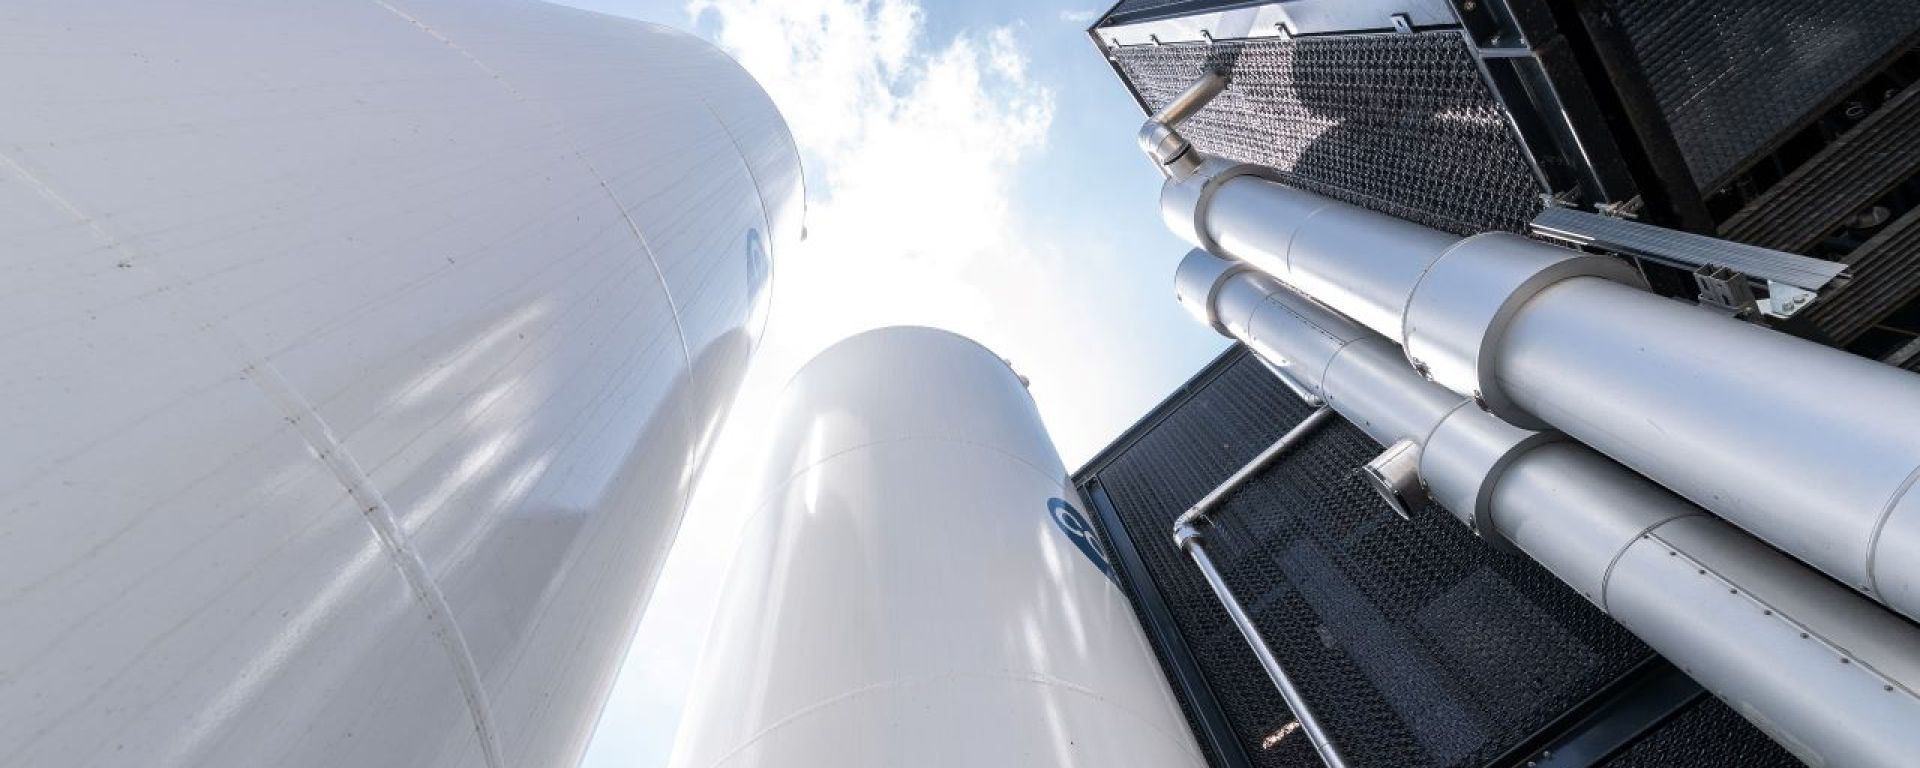 CO2 Energie AG lanciert gemeinsam mit Airfix und South Pole innovatives Klimaschutzprojekt - das grösste Projekt im Bereich Negativemissionen aus Biomasse in der Schweiz